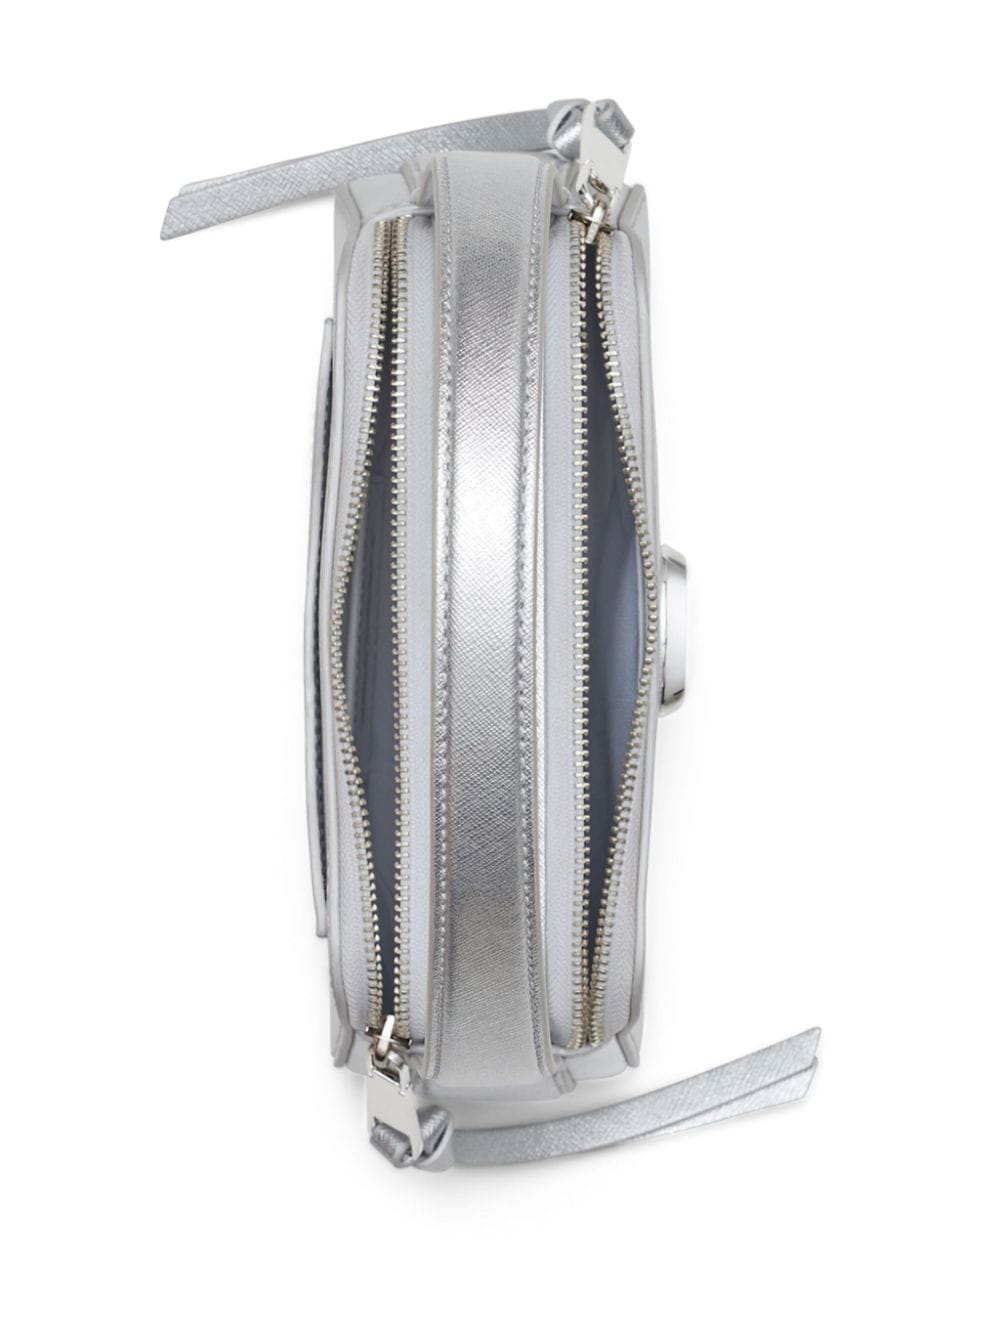 The Metallic Slingshot shoulder bag<BR/><BR/><BR/>